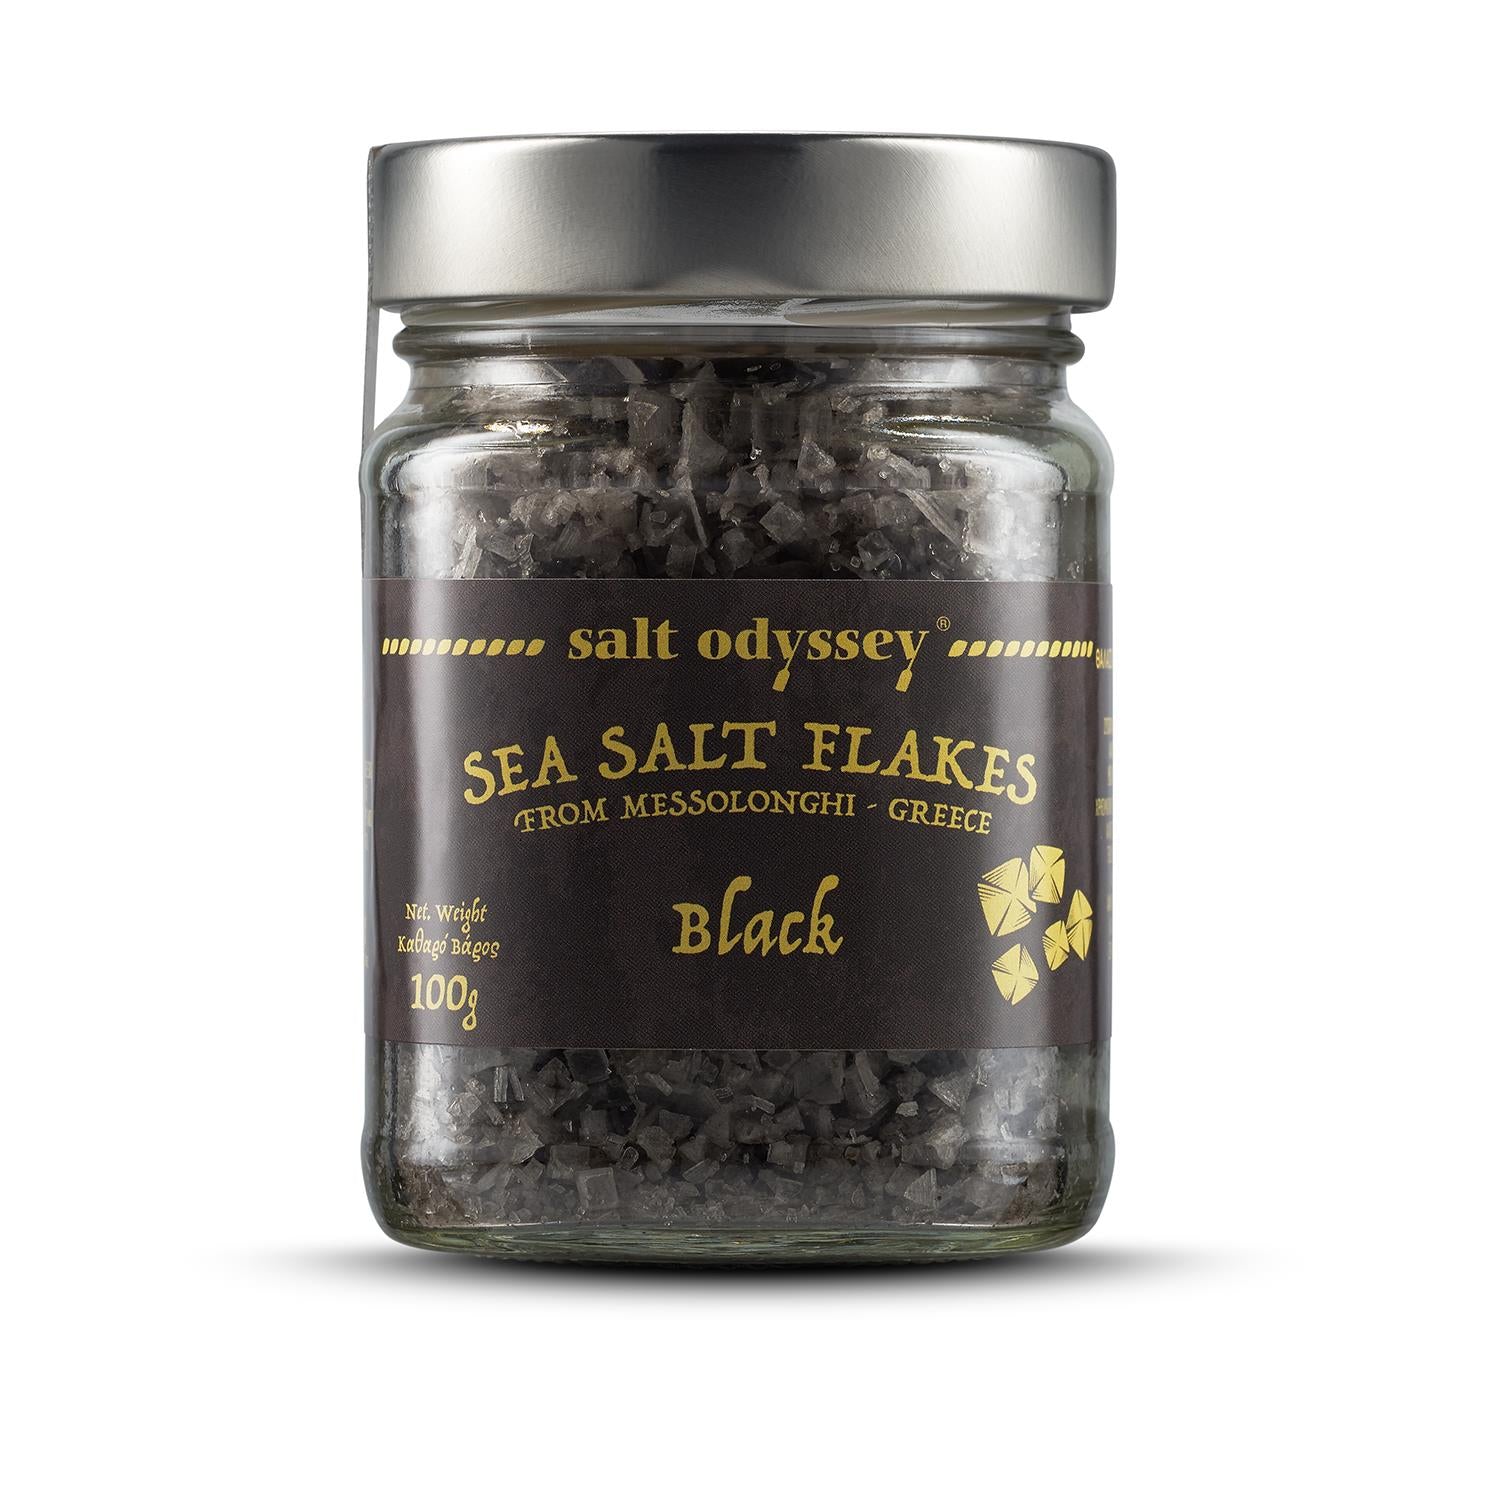 Black salt flakes - 100g